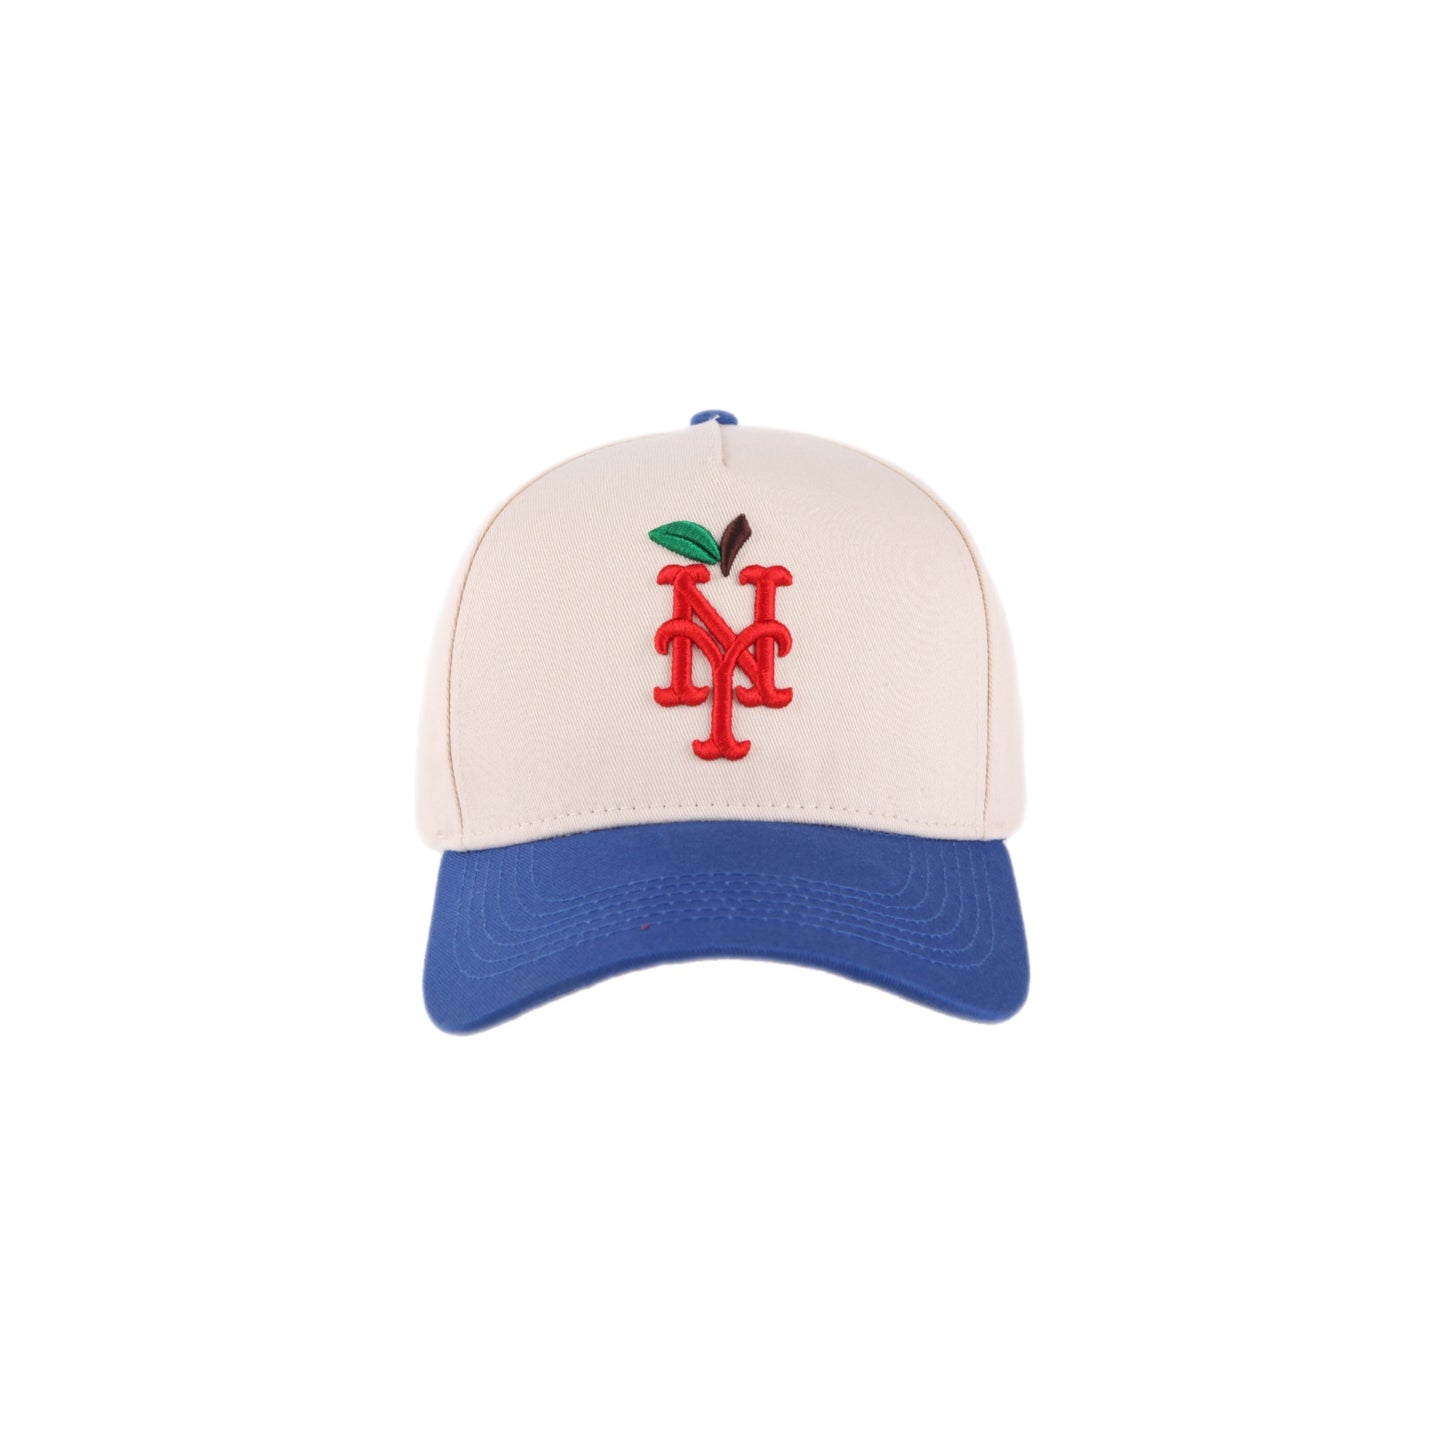 Metropolitans Apple Hat